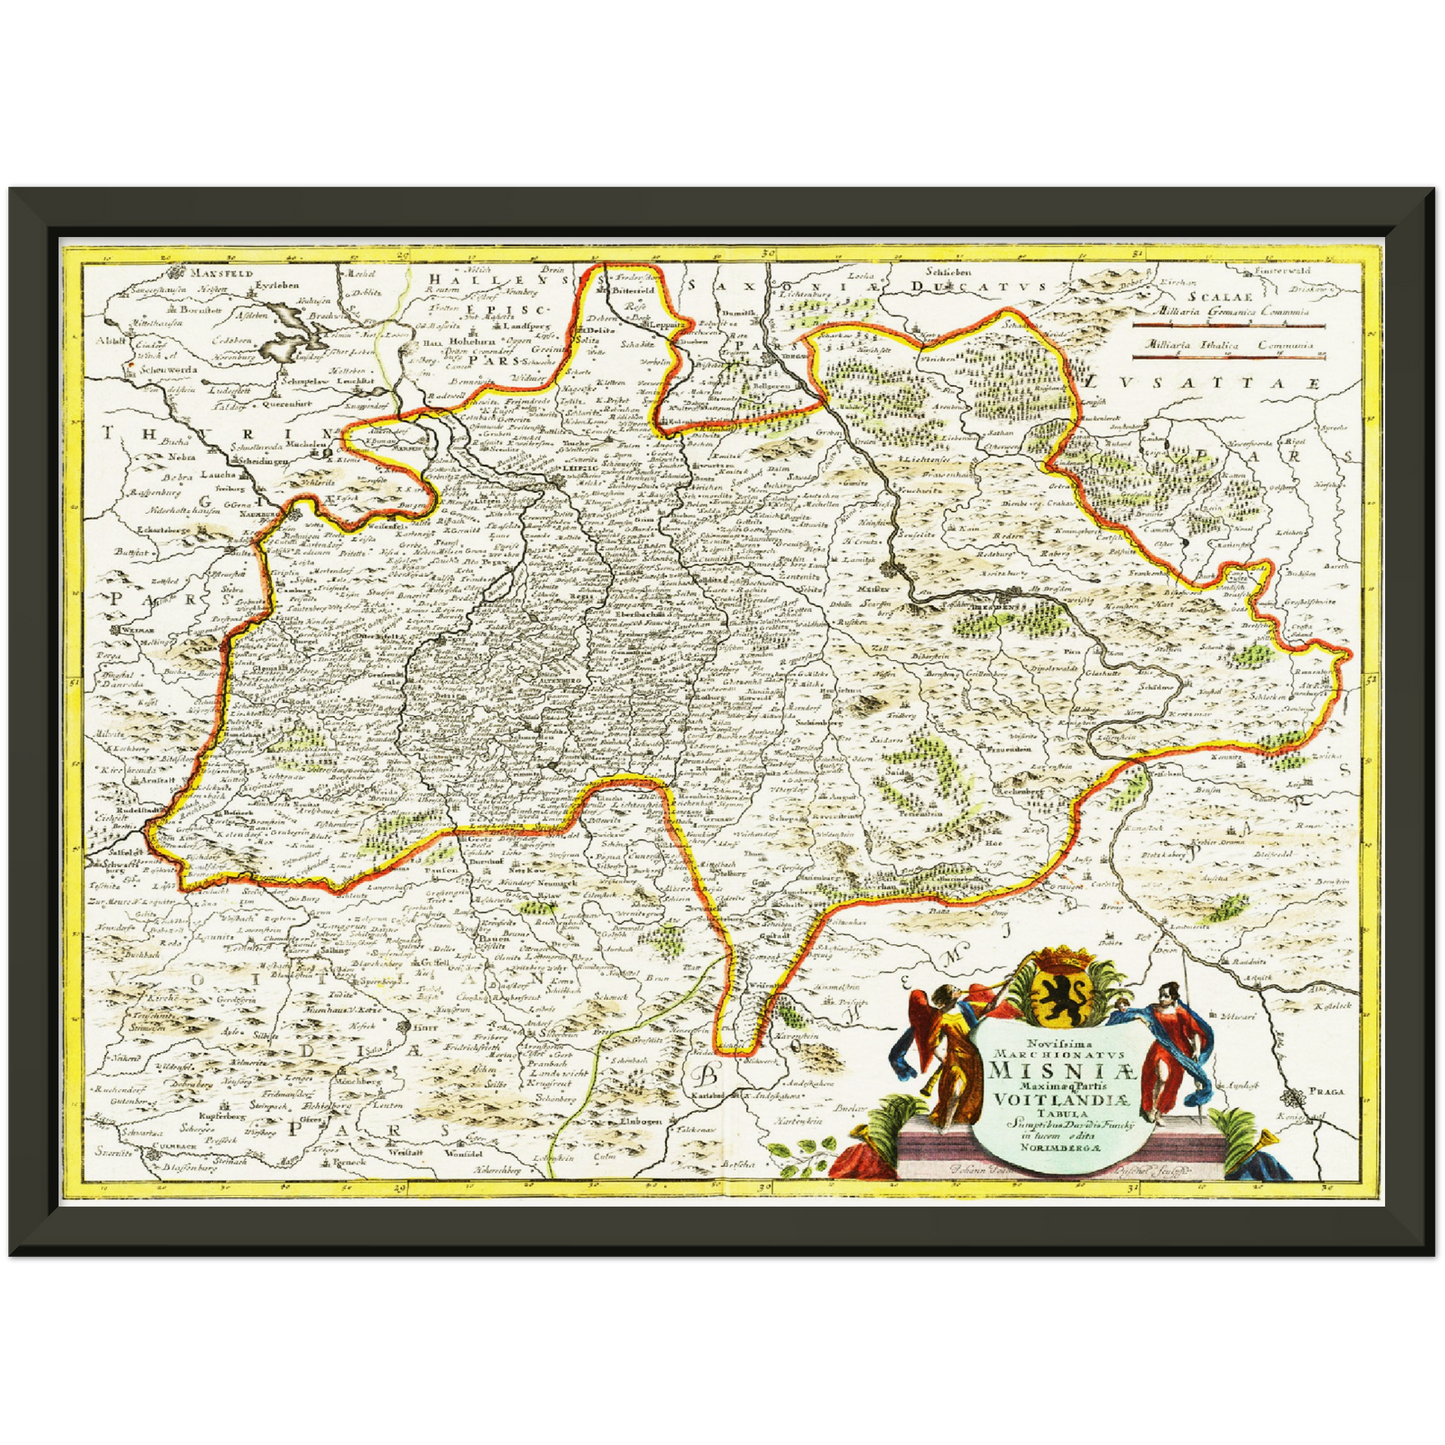 Historische Landkarte Meißen um 1700